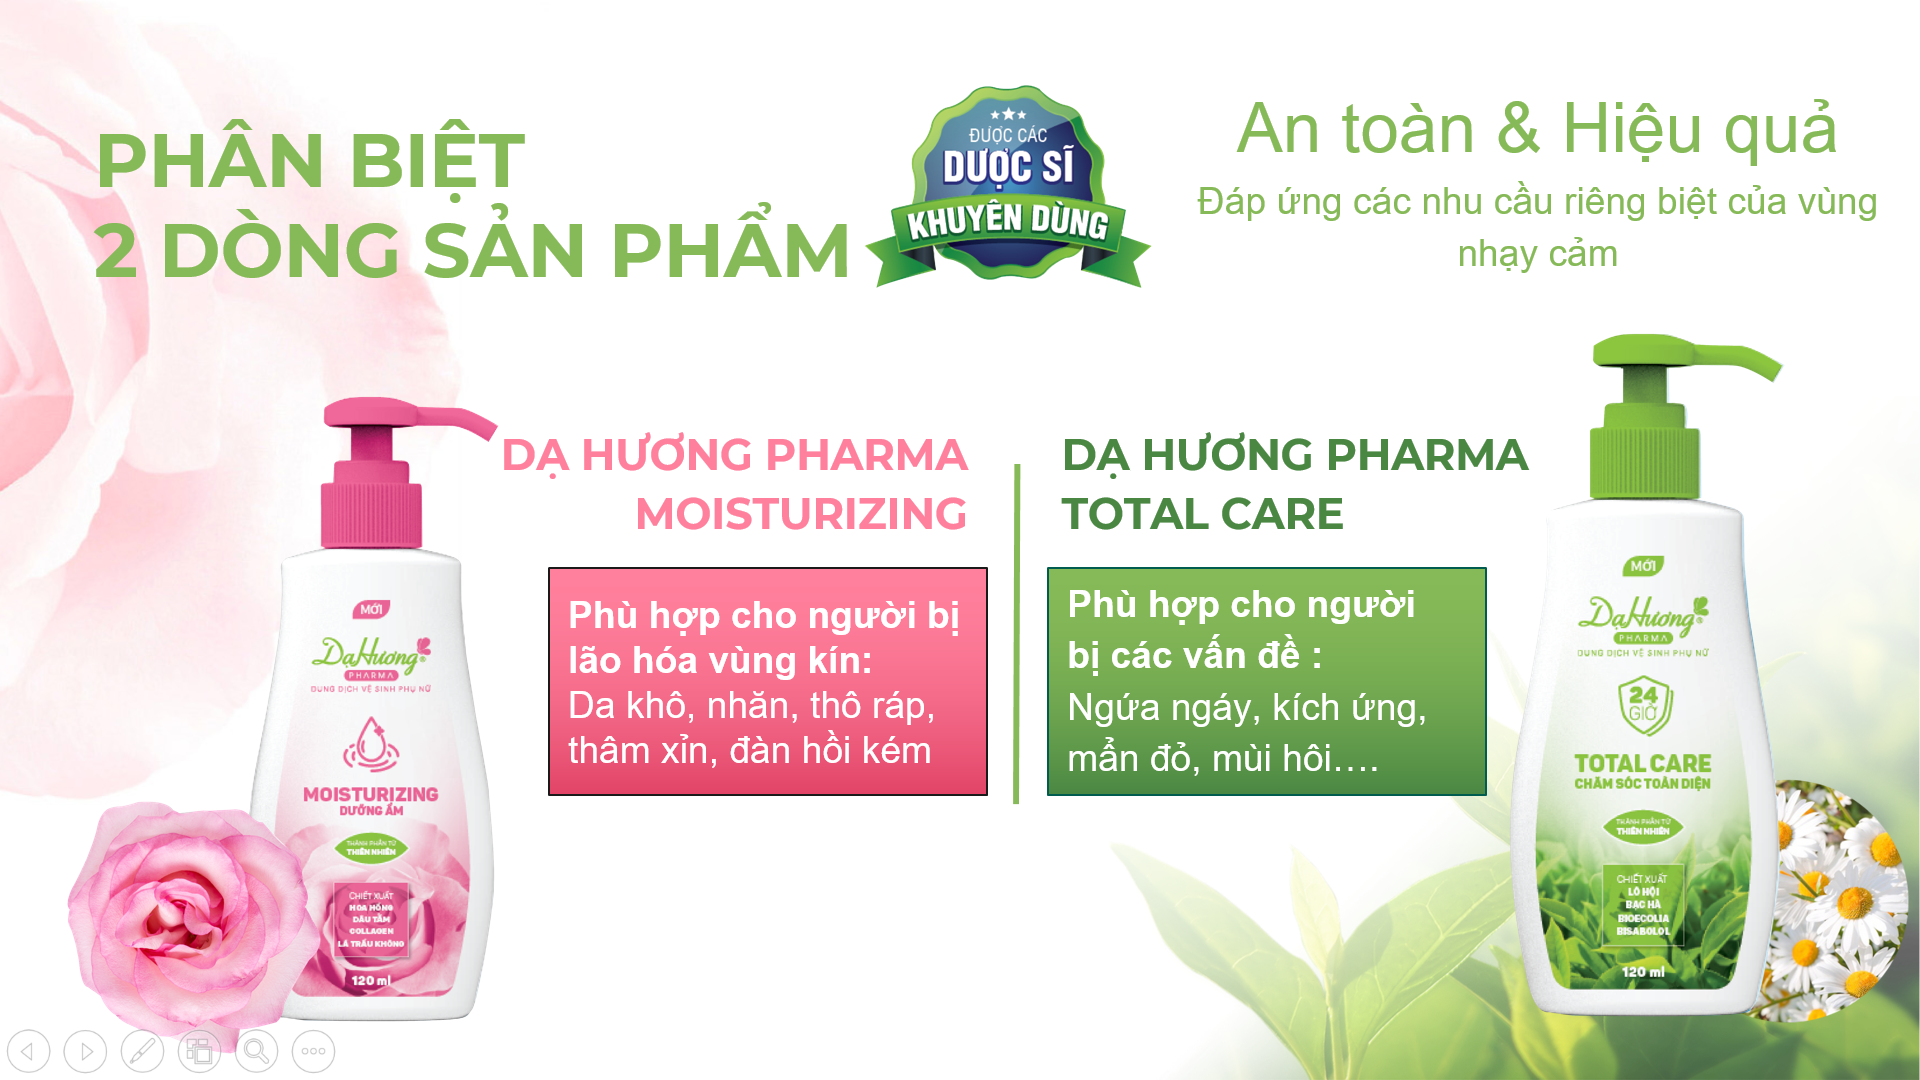 2 dòng sản phẩm Dạ Hương Pharma